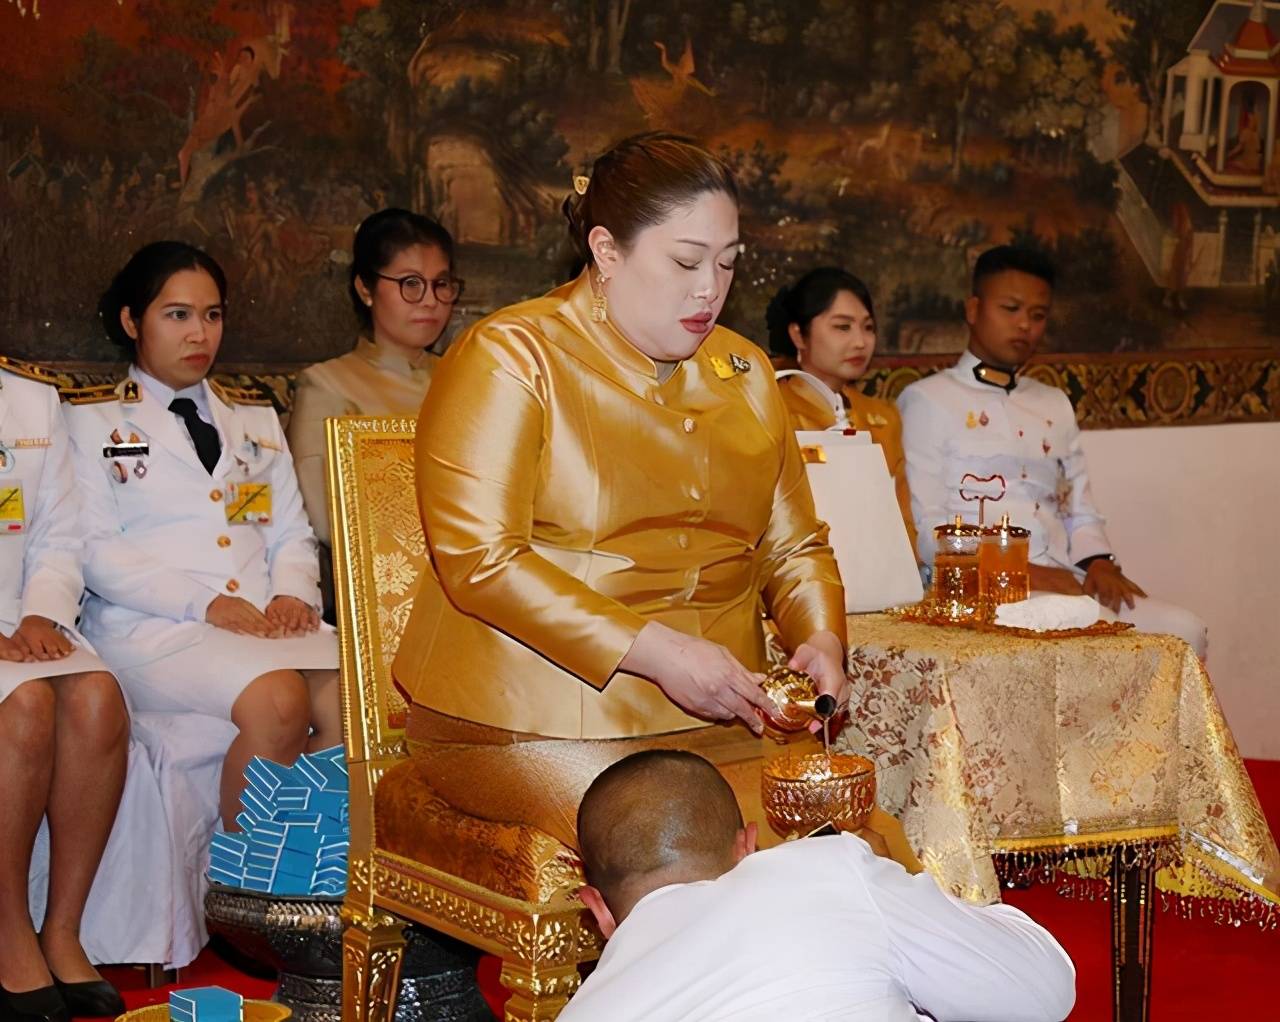 原创泰国胖公主迎38岁生日!王室发新照,200斤了还大胆穿紧身裙